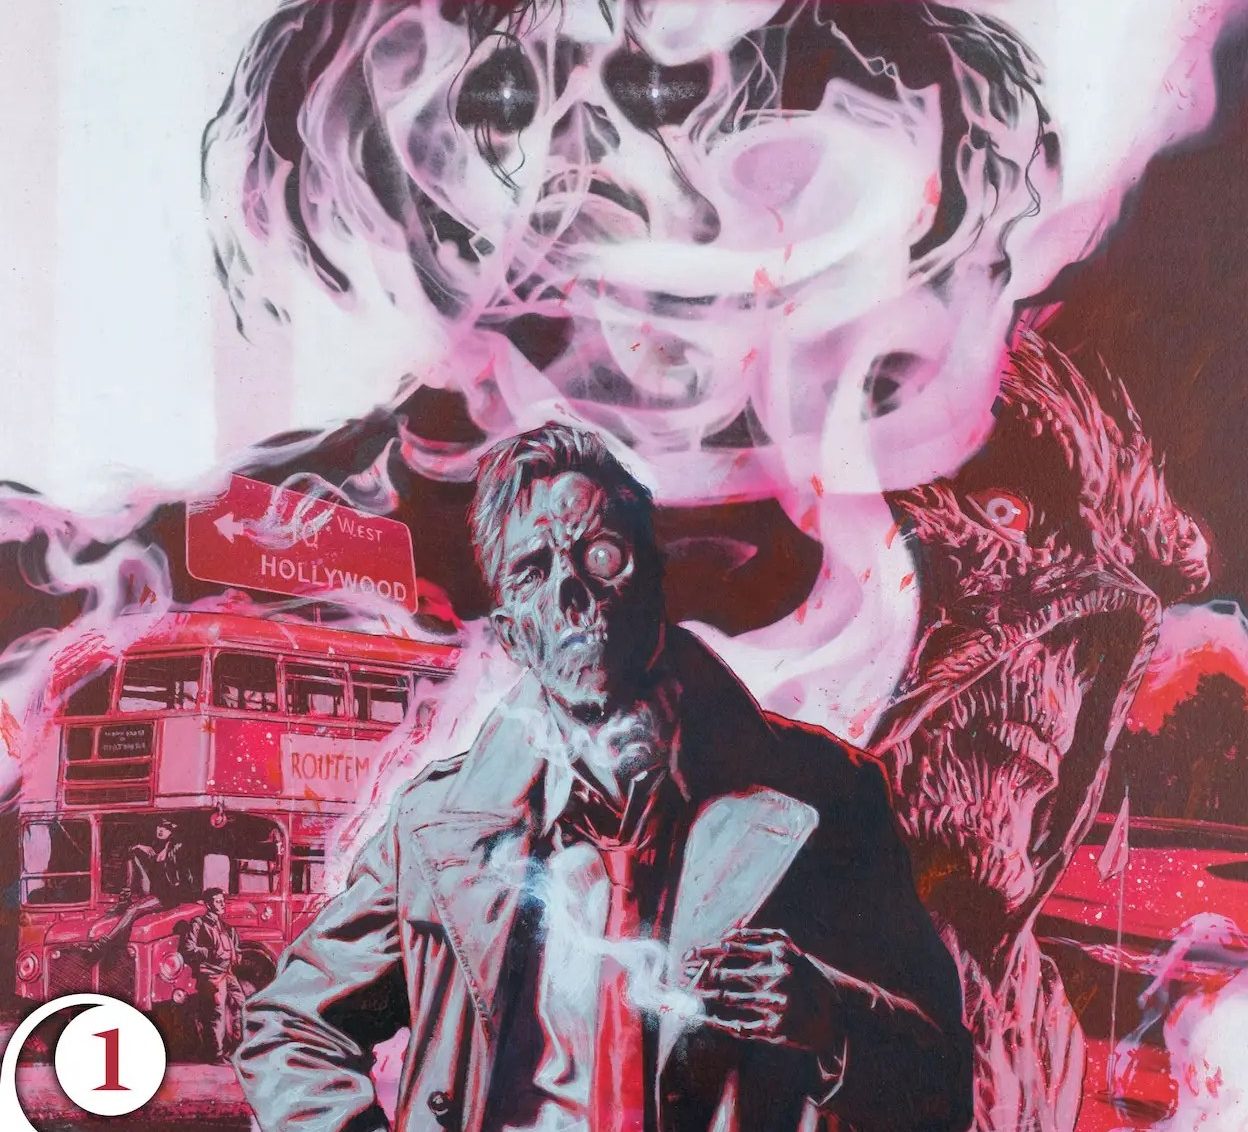 'John Constantine, Hellblazer: Dead in America' #1 review: Sweet dreams